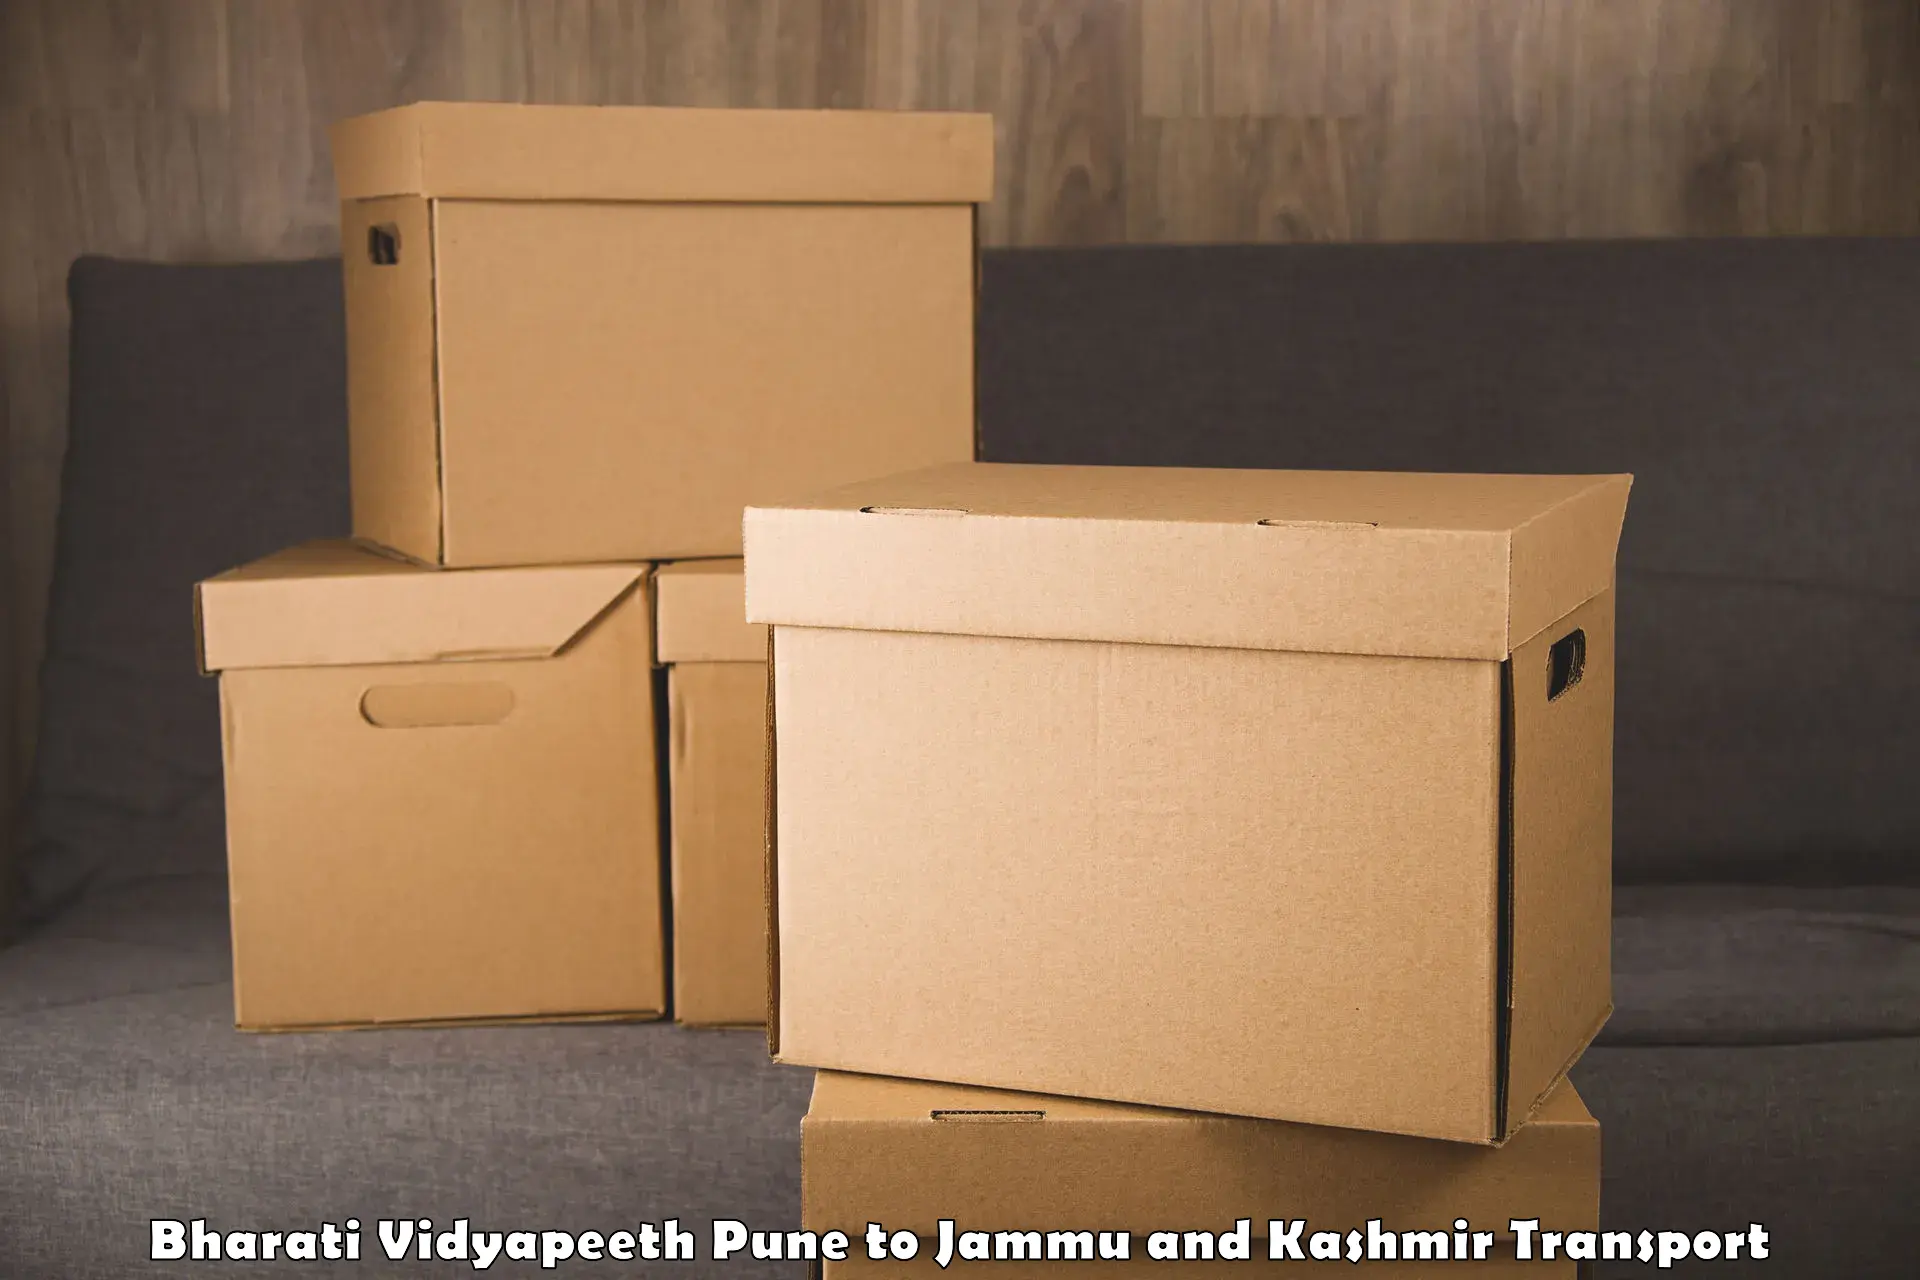 Daily parcel service transport Bharati Vidyapeeth Pune to Srinagar Kashmir